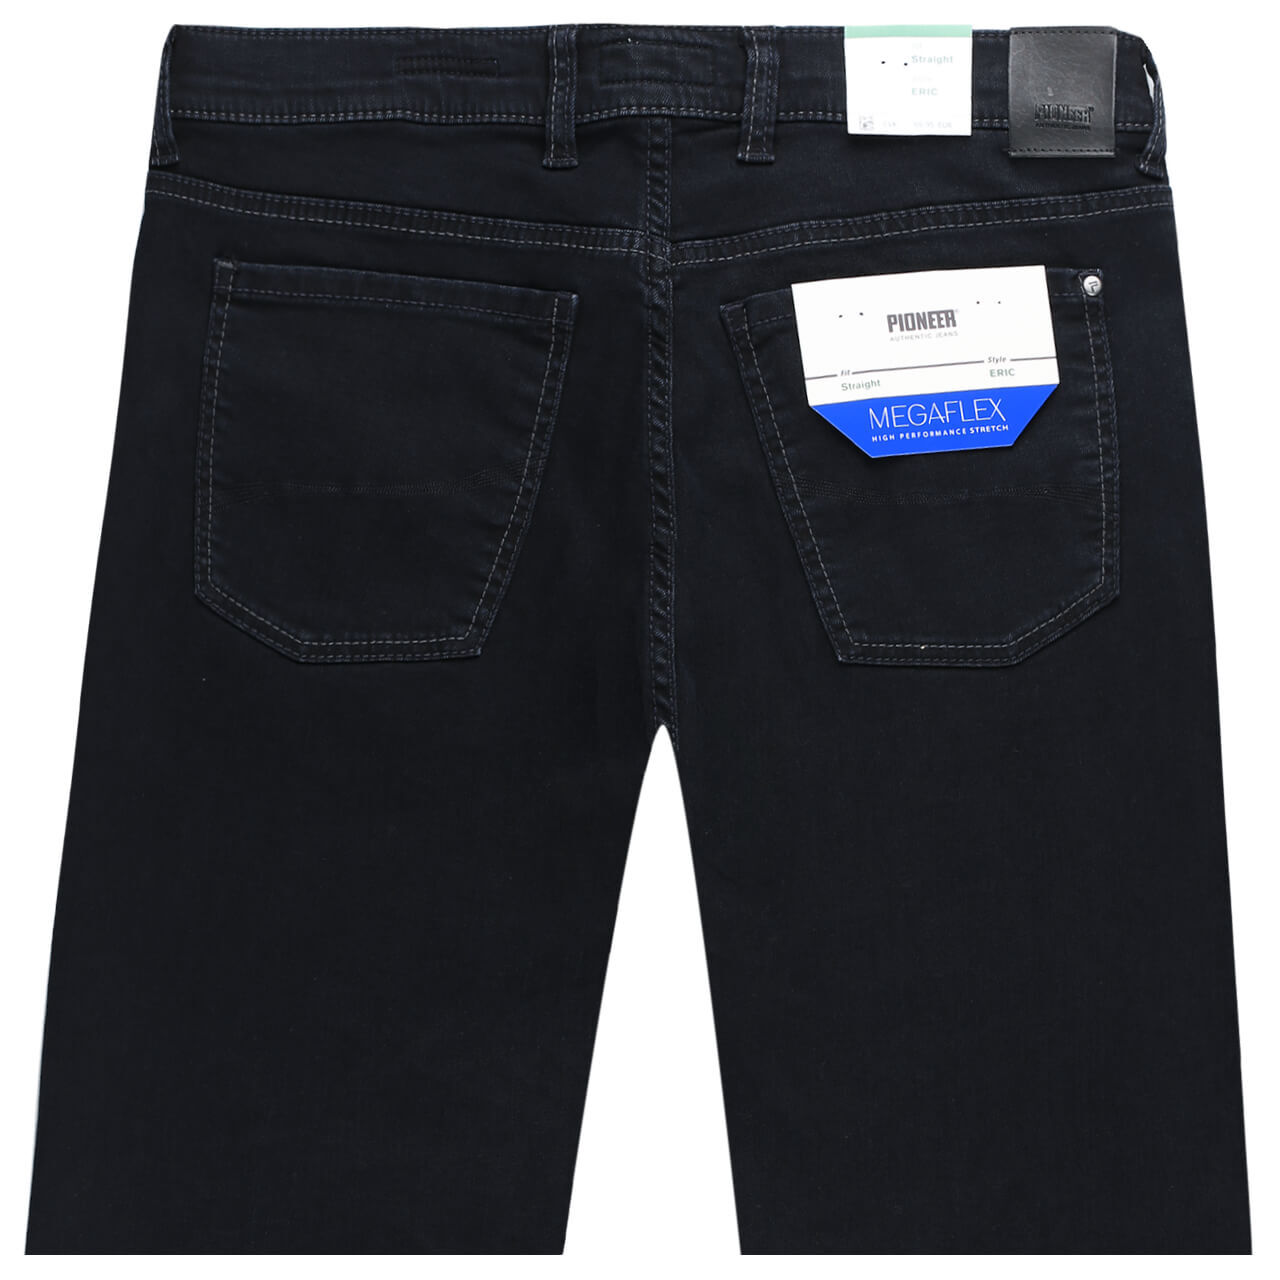 Pioneer Jeans Eric Megaflex für Herren in Schwarz-Blau, FarbNr.: 6801